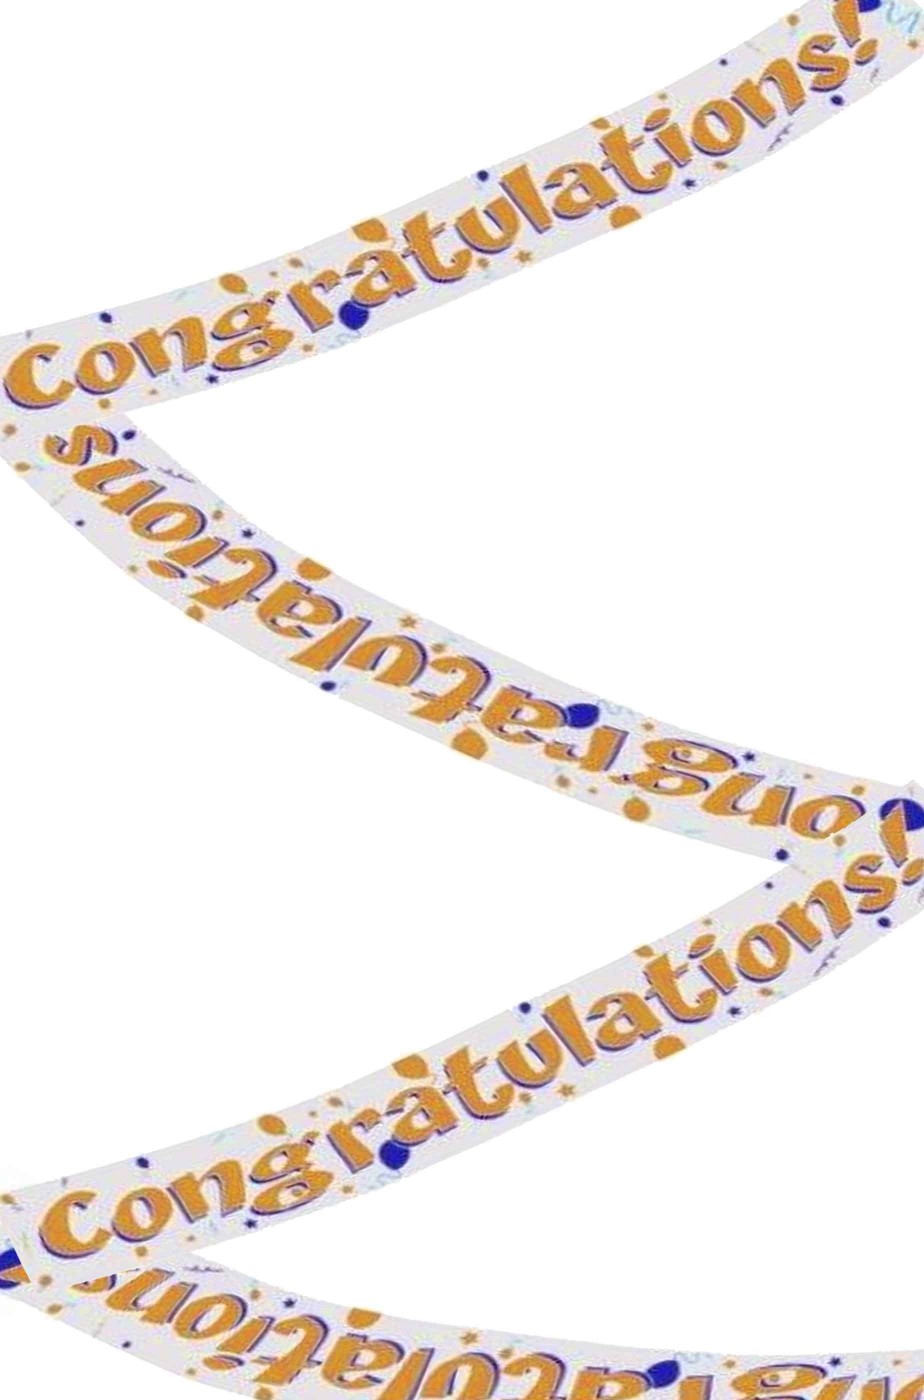 Striscione festa congratulazioni Congratulations in foil